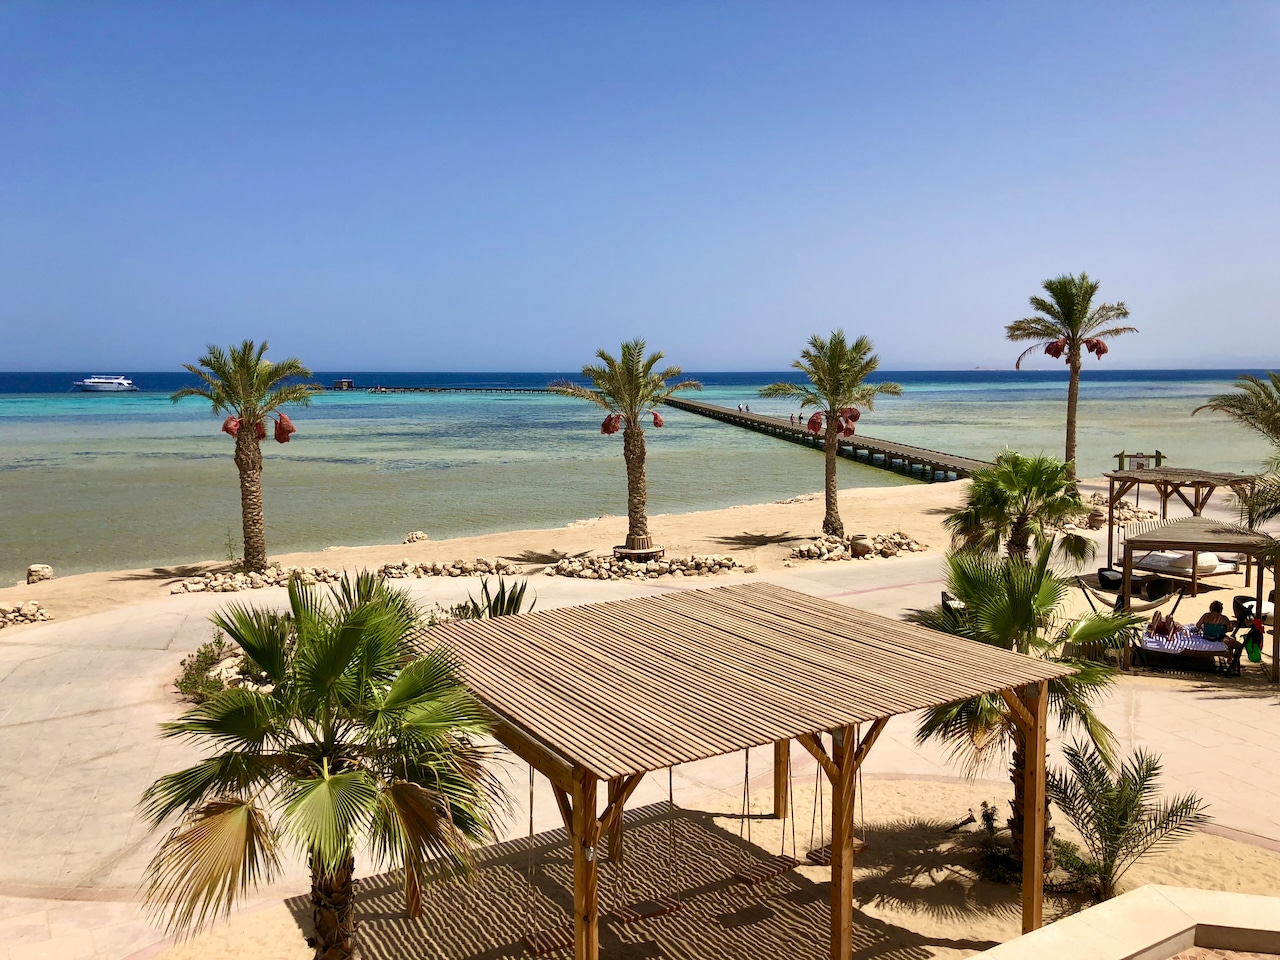 Langzeiturlaub in einem Fünf-Sterne-Hotel in Ägypten ist teilweise so günstig, dass man dort monatelang bei Sonnengarantie, warmen Temperaturen im Winter, All Inclusive und mit gutem Internet verweilen kann.